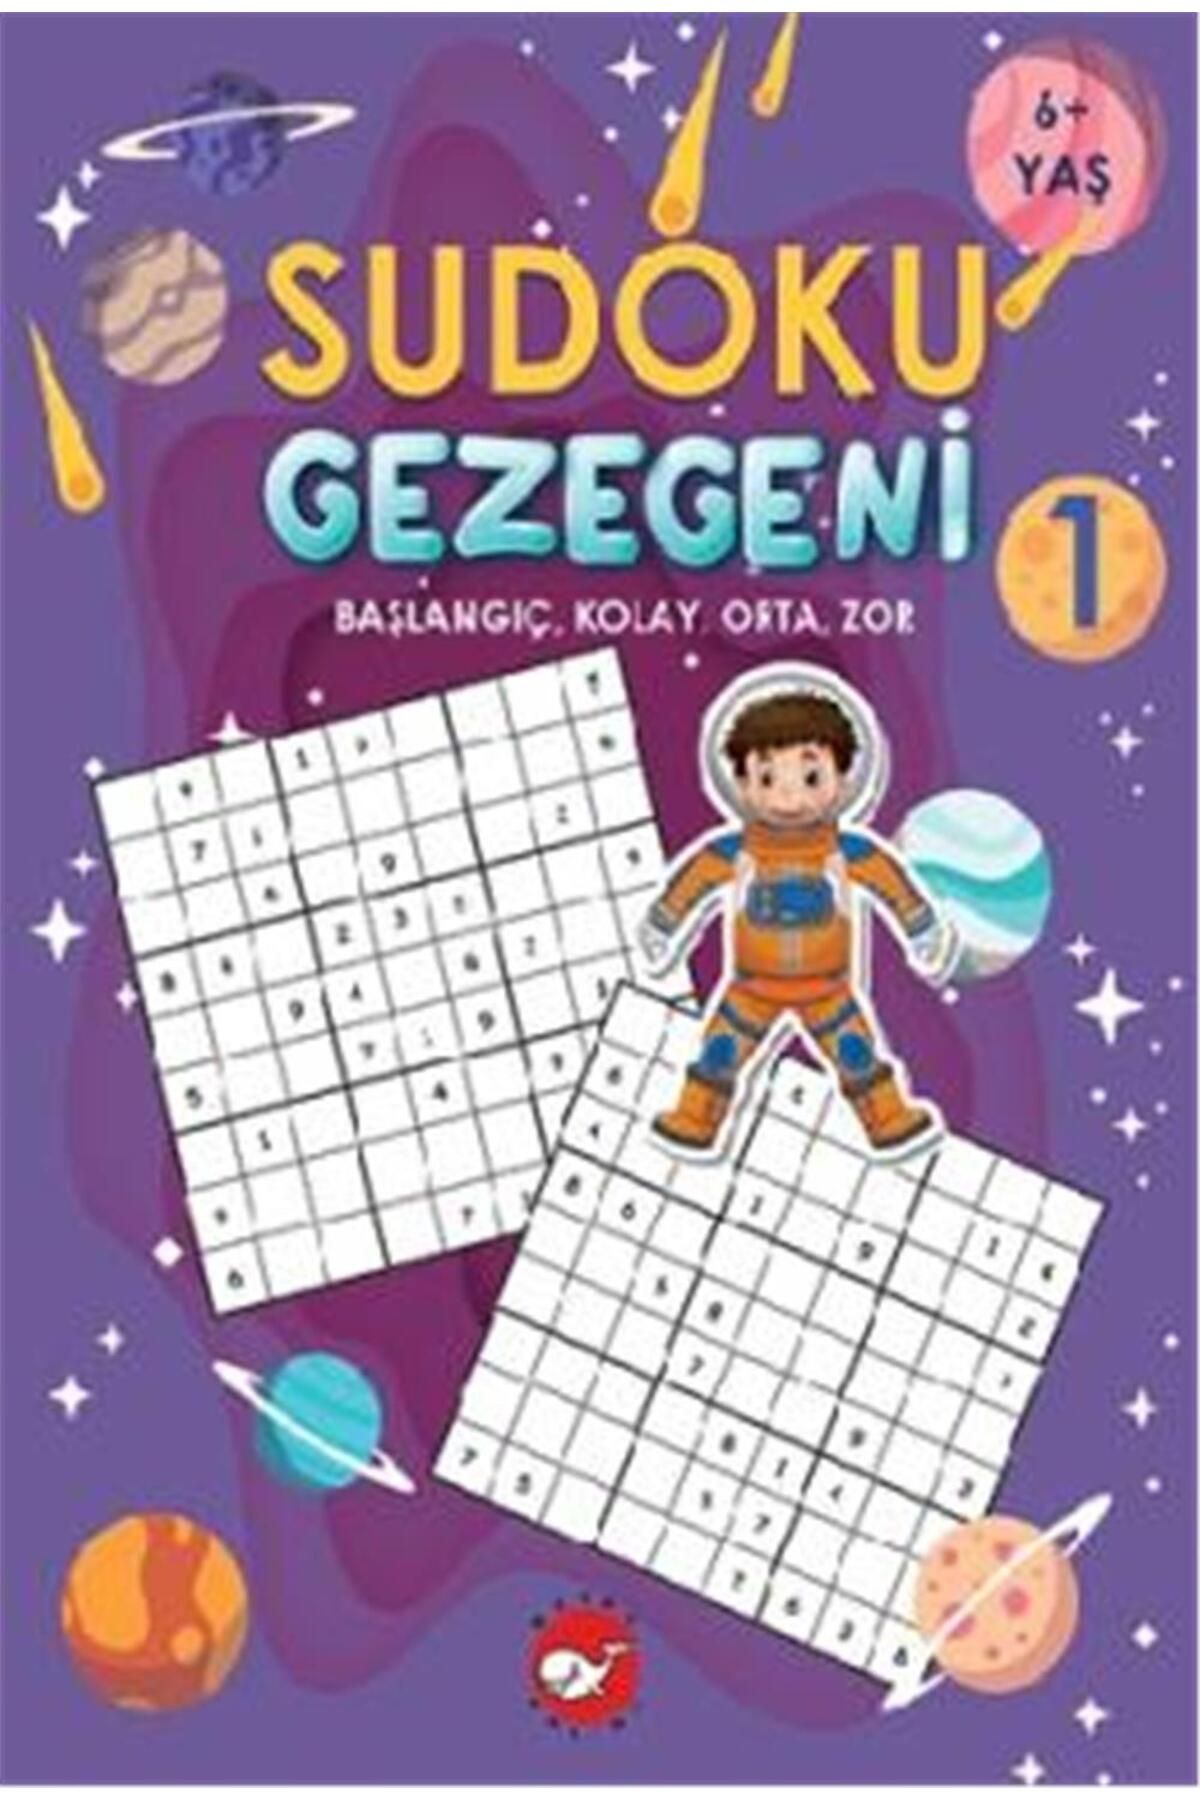 Beyaz Balina Yayınları Sudoku Gezegeni 1: Başlangıç Kolay Orta Zor